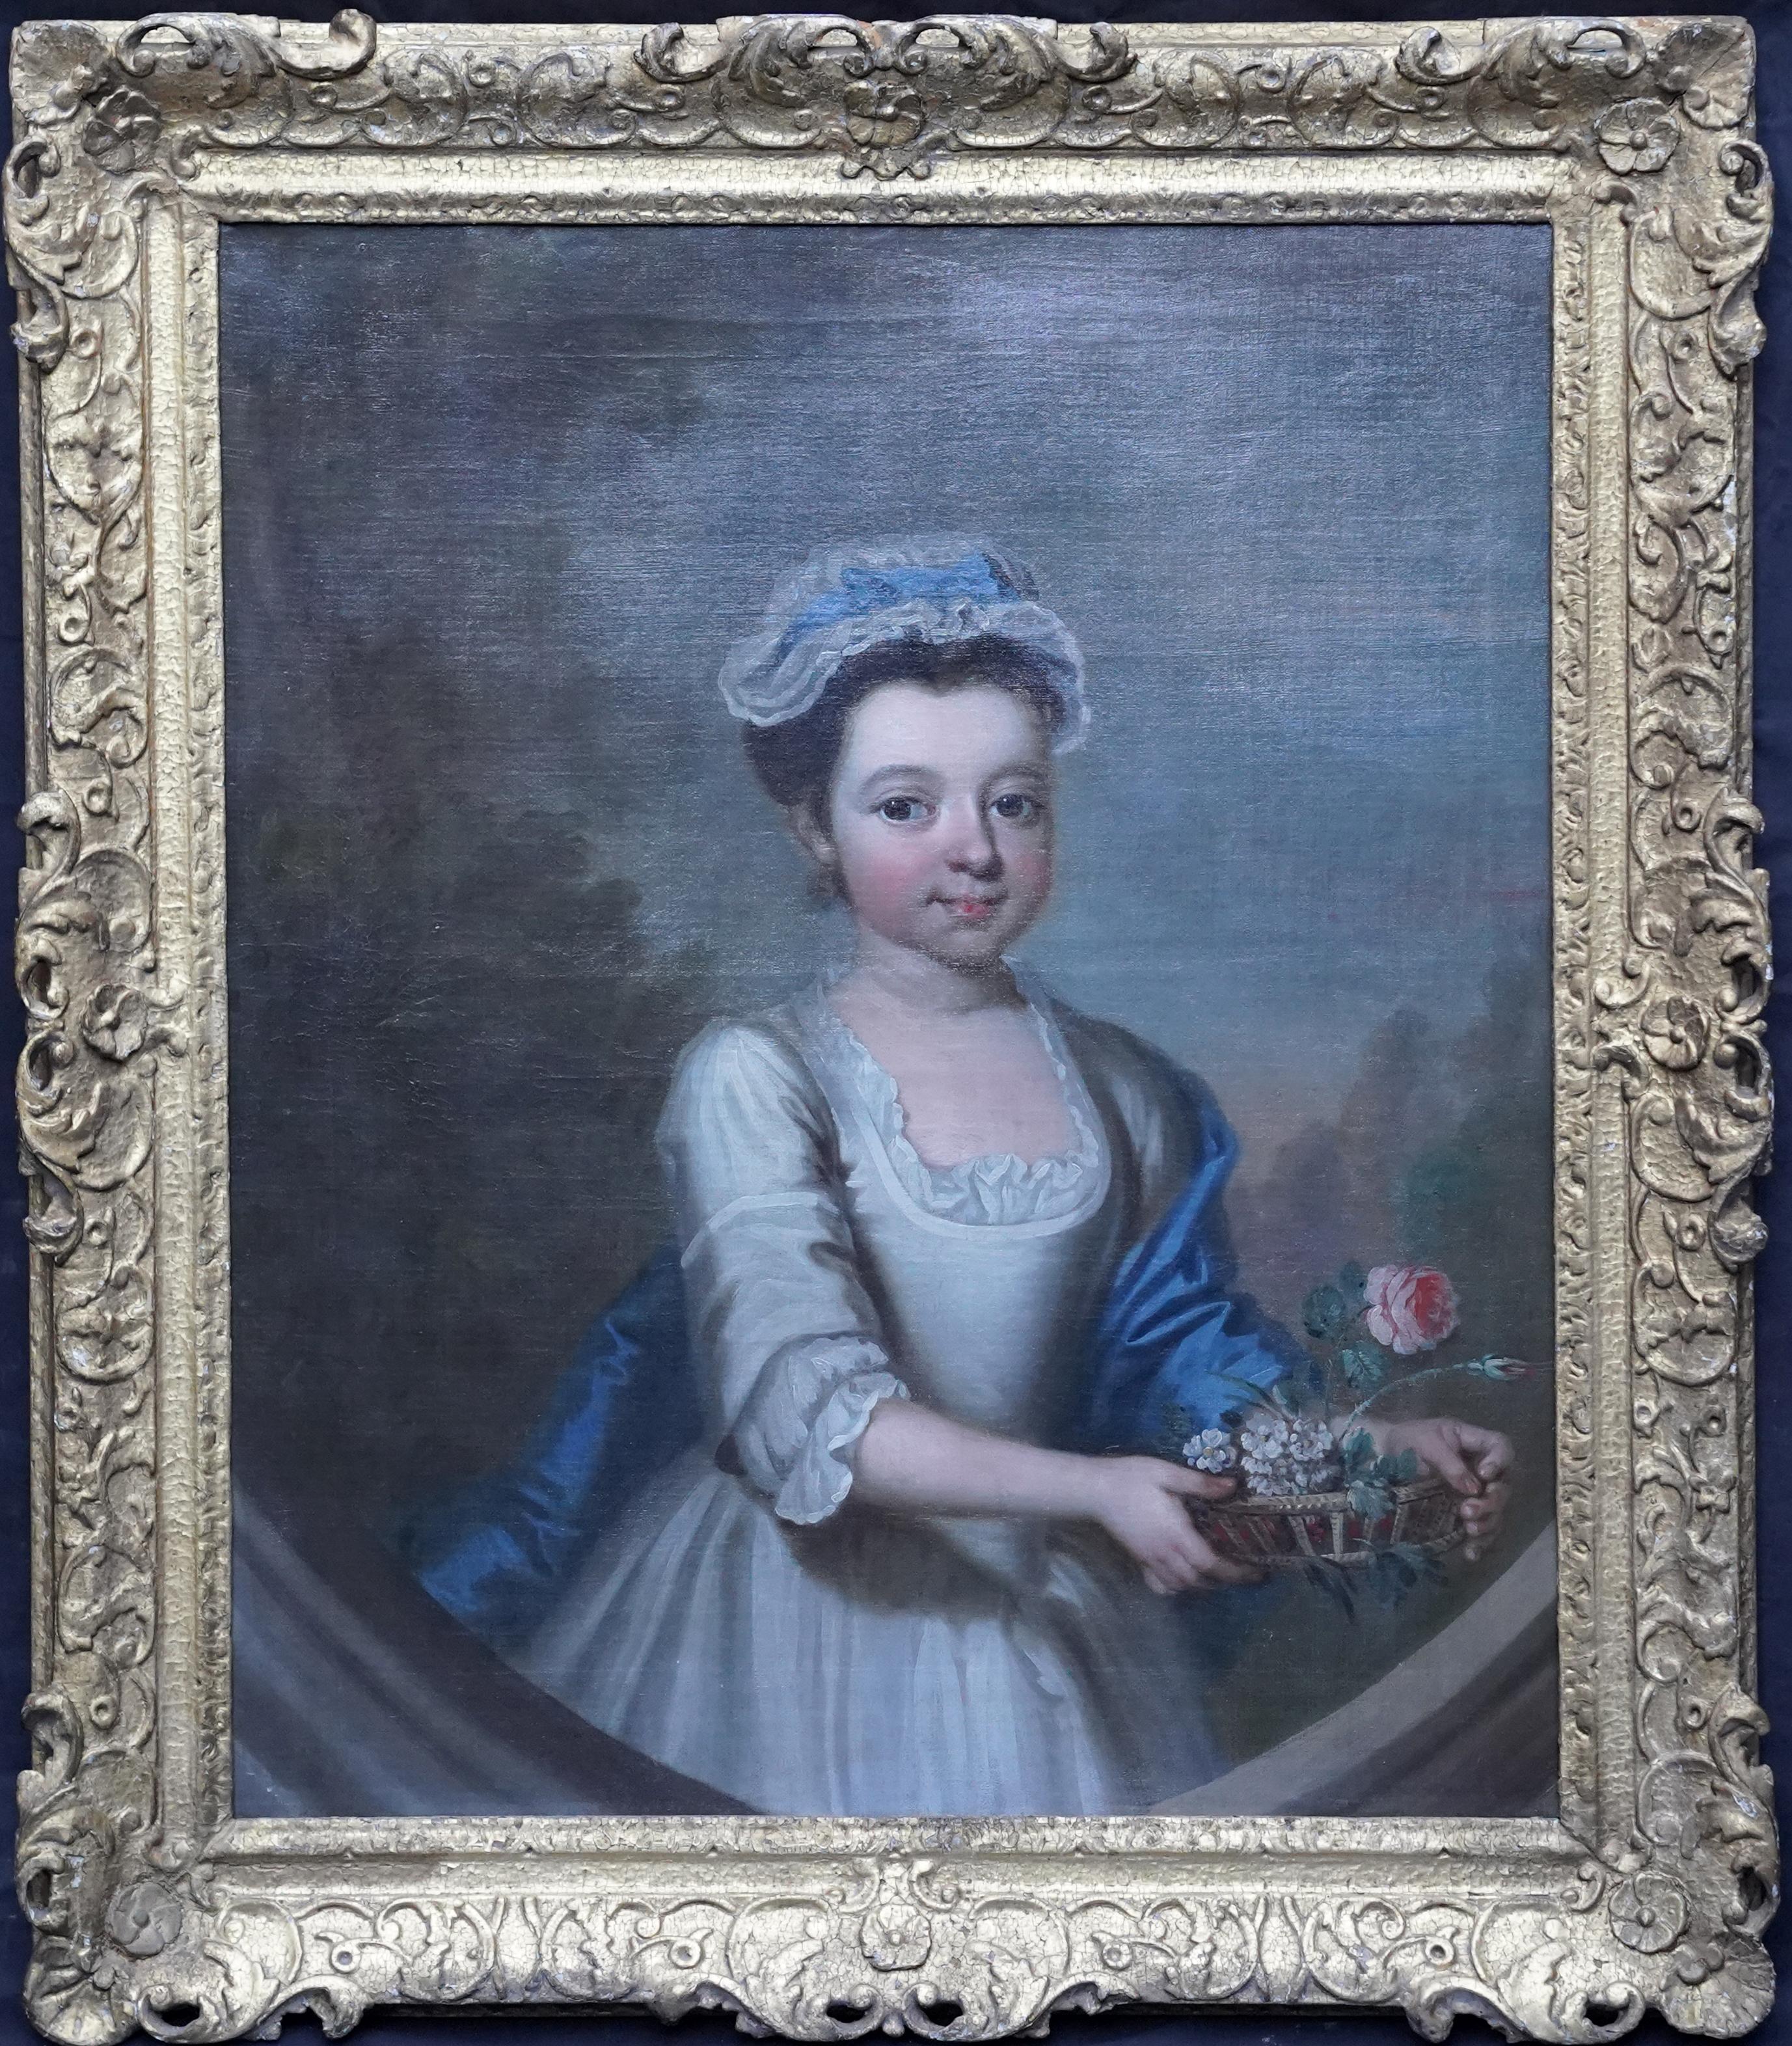 Philip Mercier Portrait Painting – Porträt eines Mädchens mit Blumenkorb - Britisches Ölgemälde eines alten Meisters aus dem 18. Jahrhundert